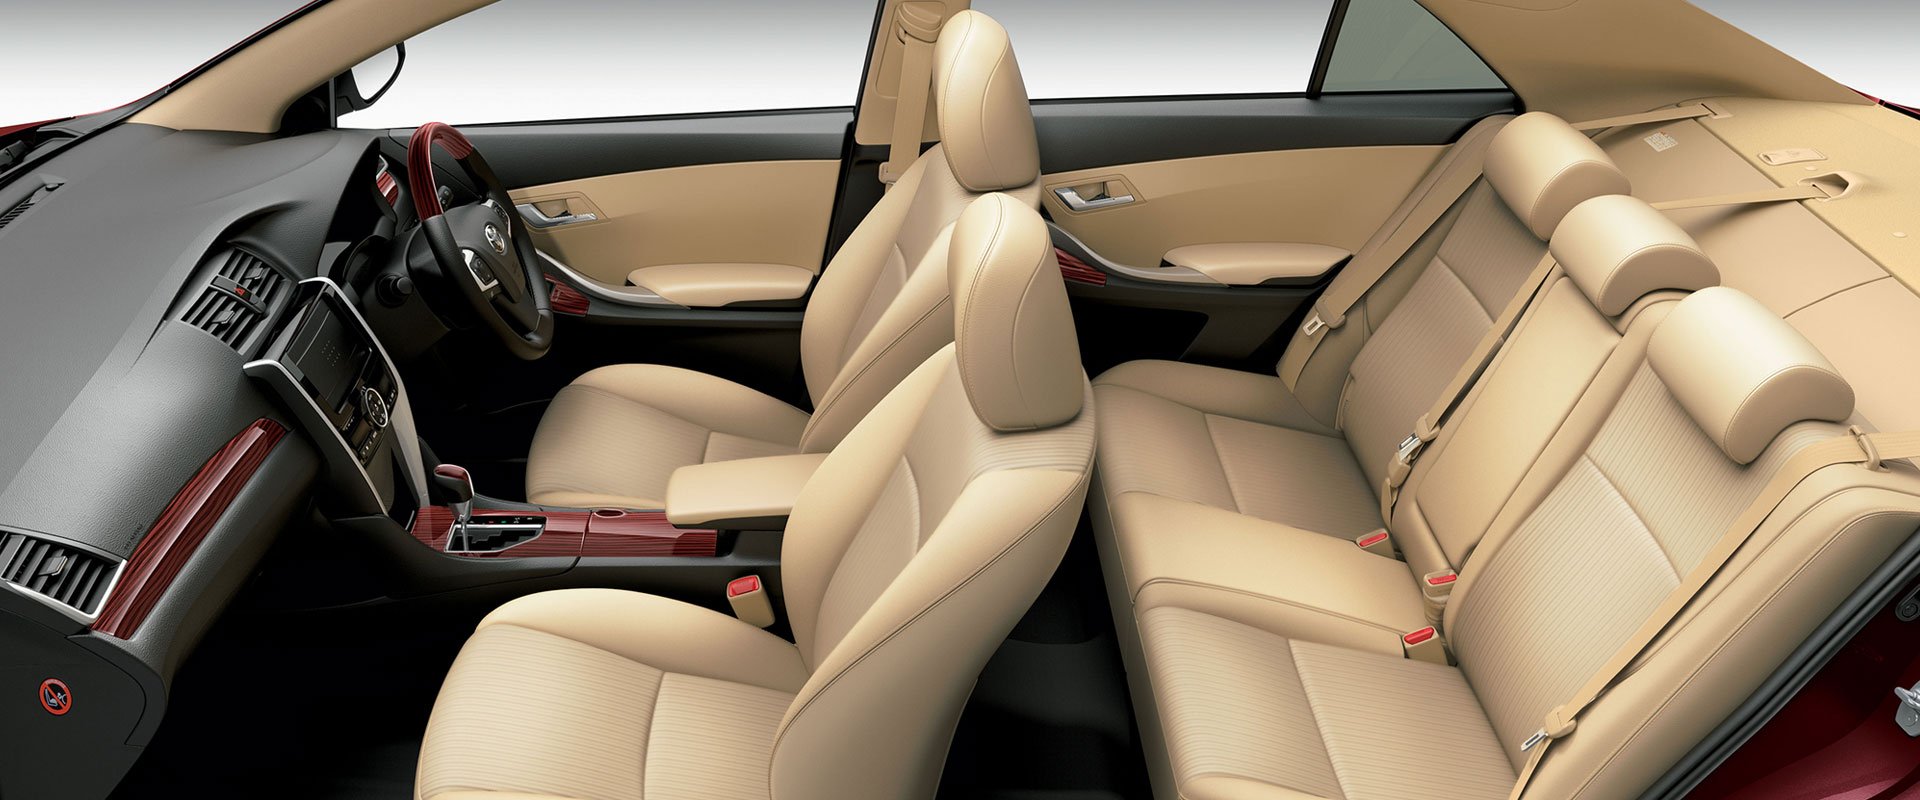 Toyota Allion interior - Seats